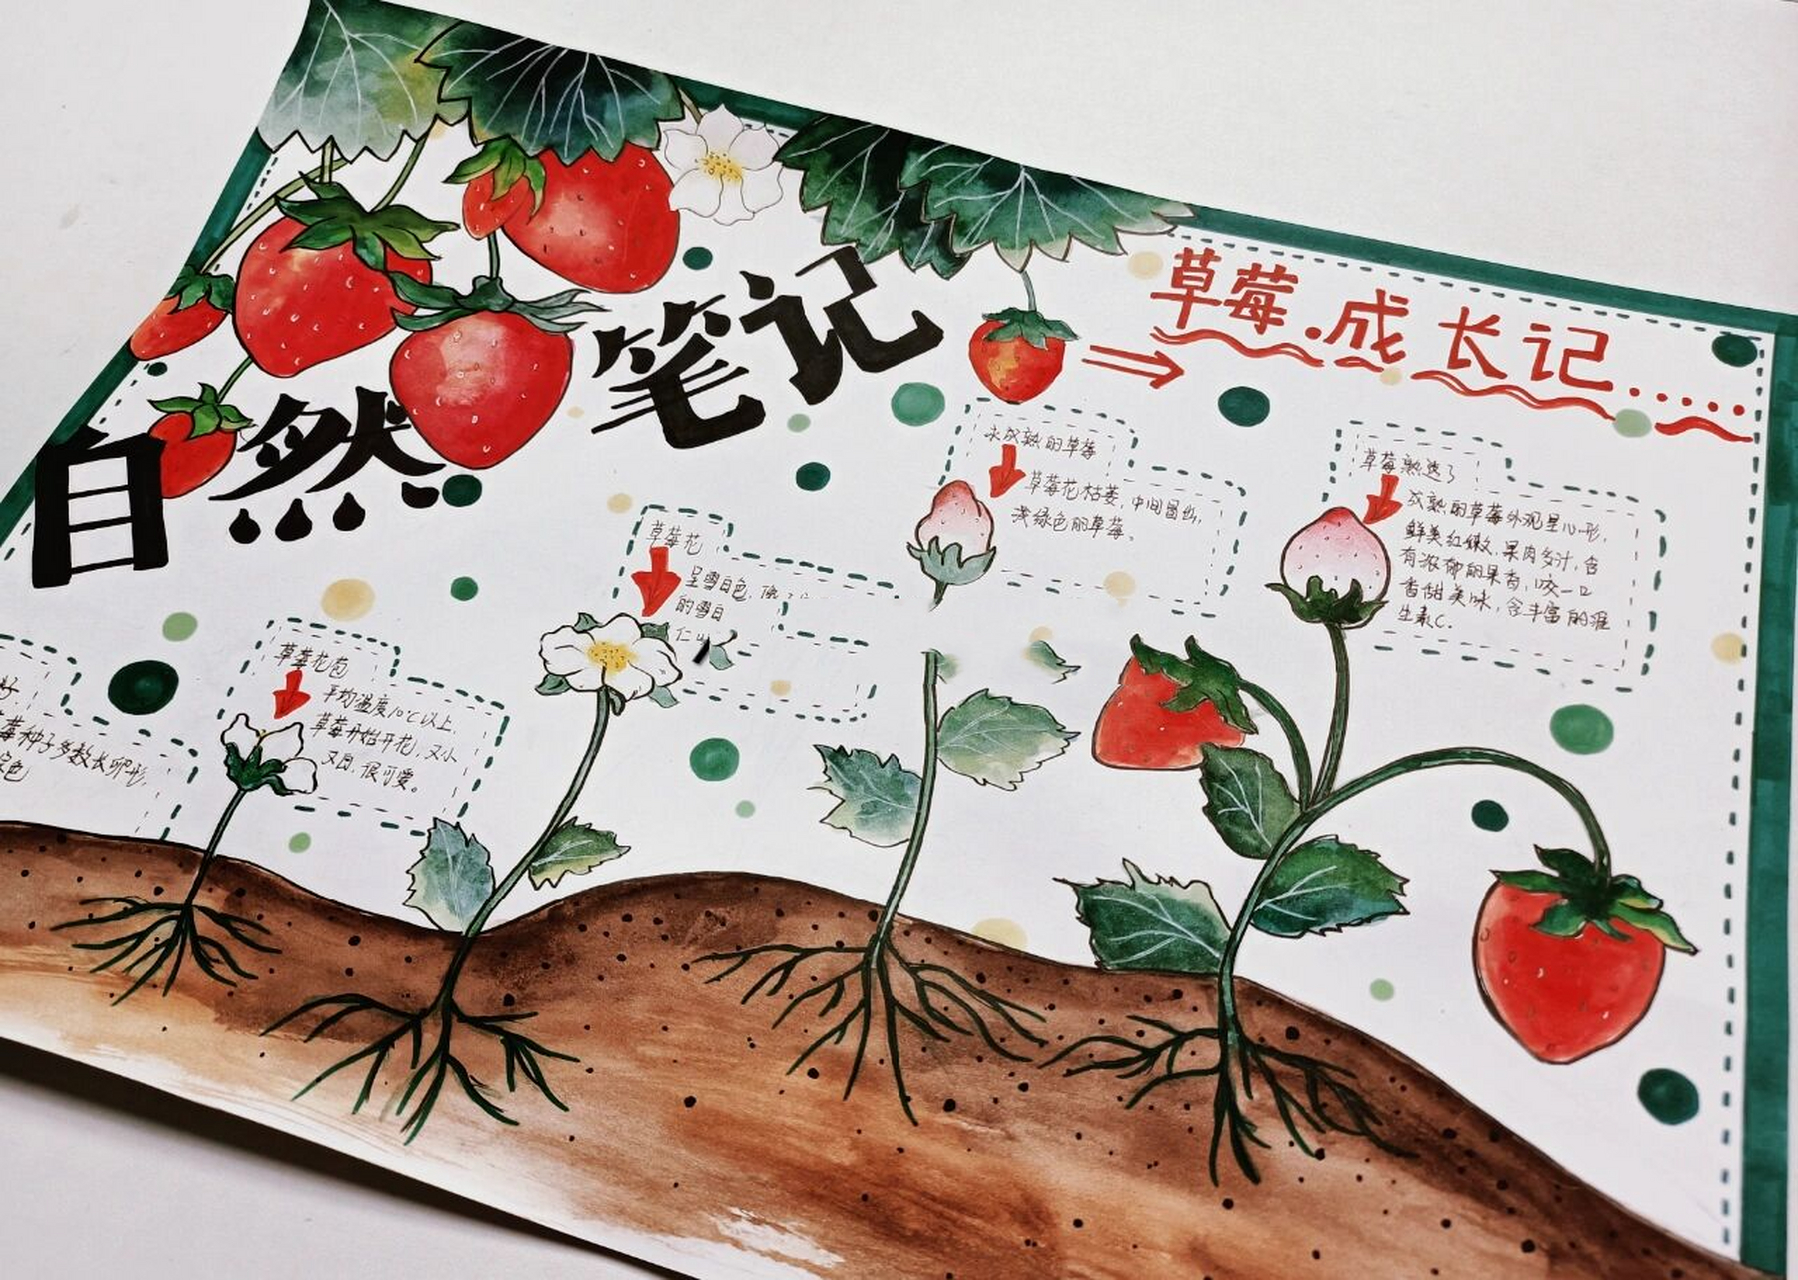 自然笔记,草莓成长记——小学生手抄报 学生作业78